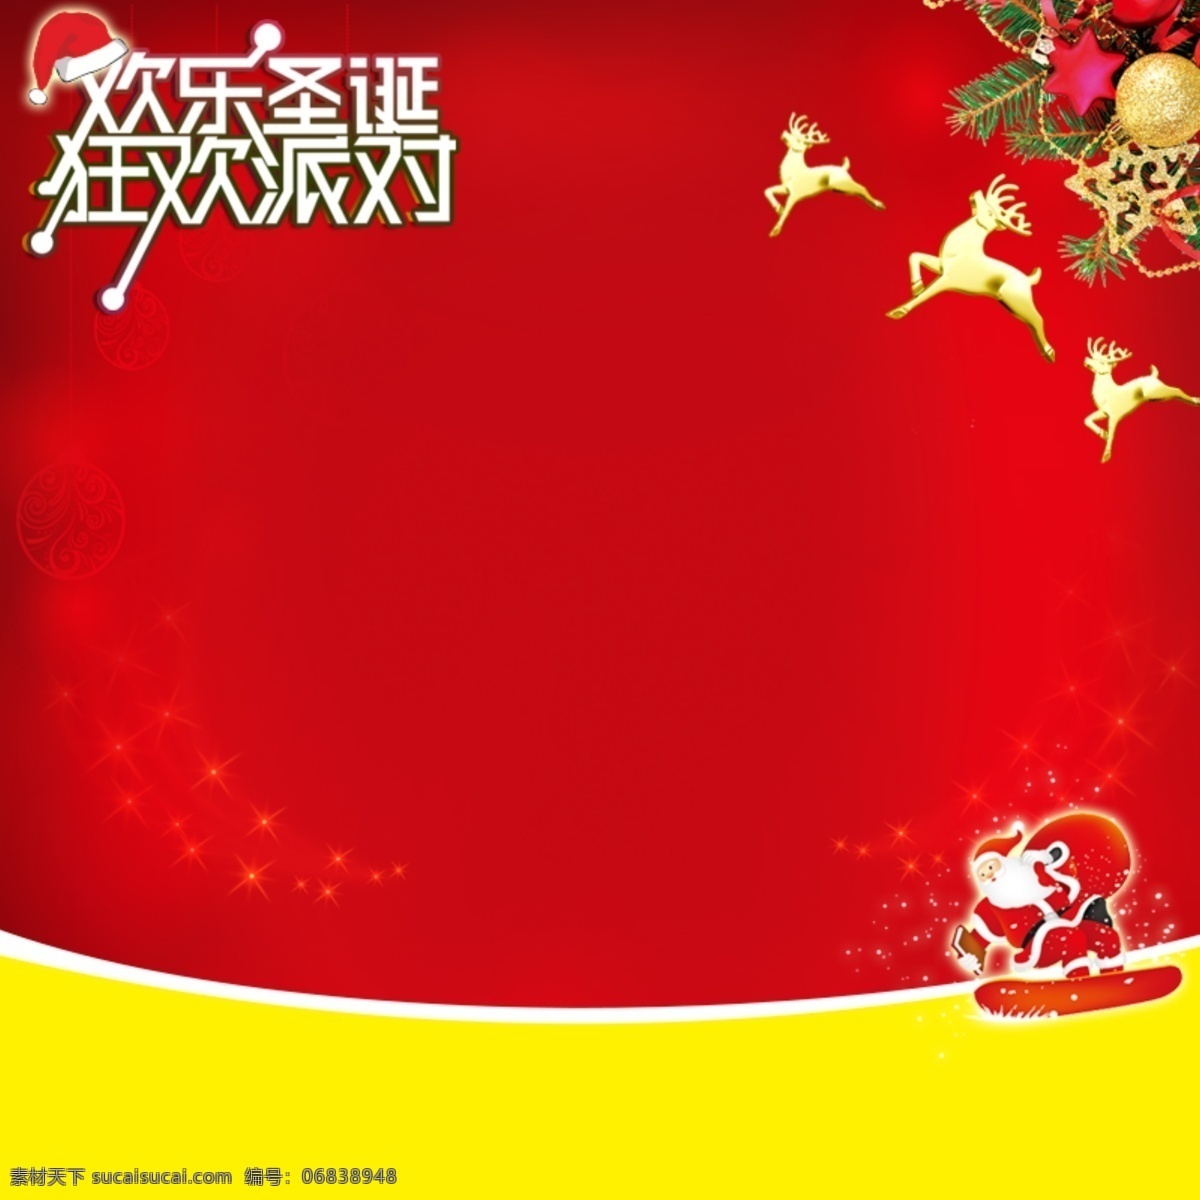 圣诞节 背景 圣诞礼物 节日 促销 模板 红色